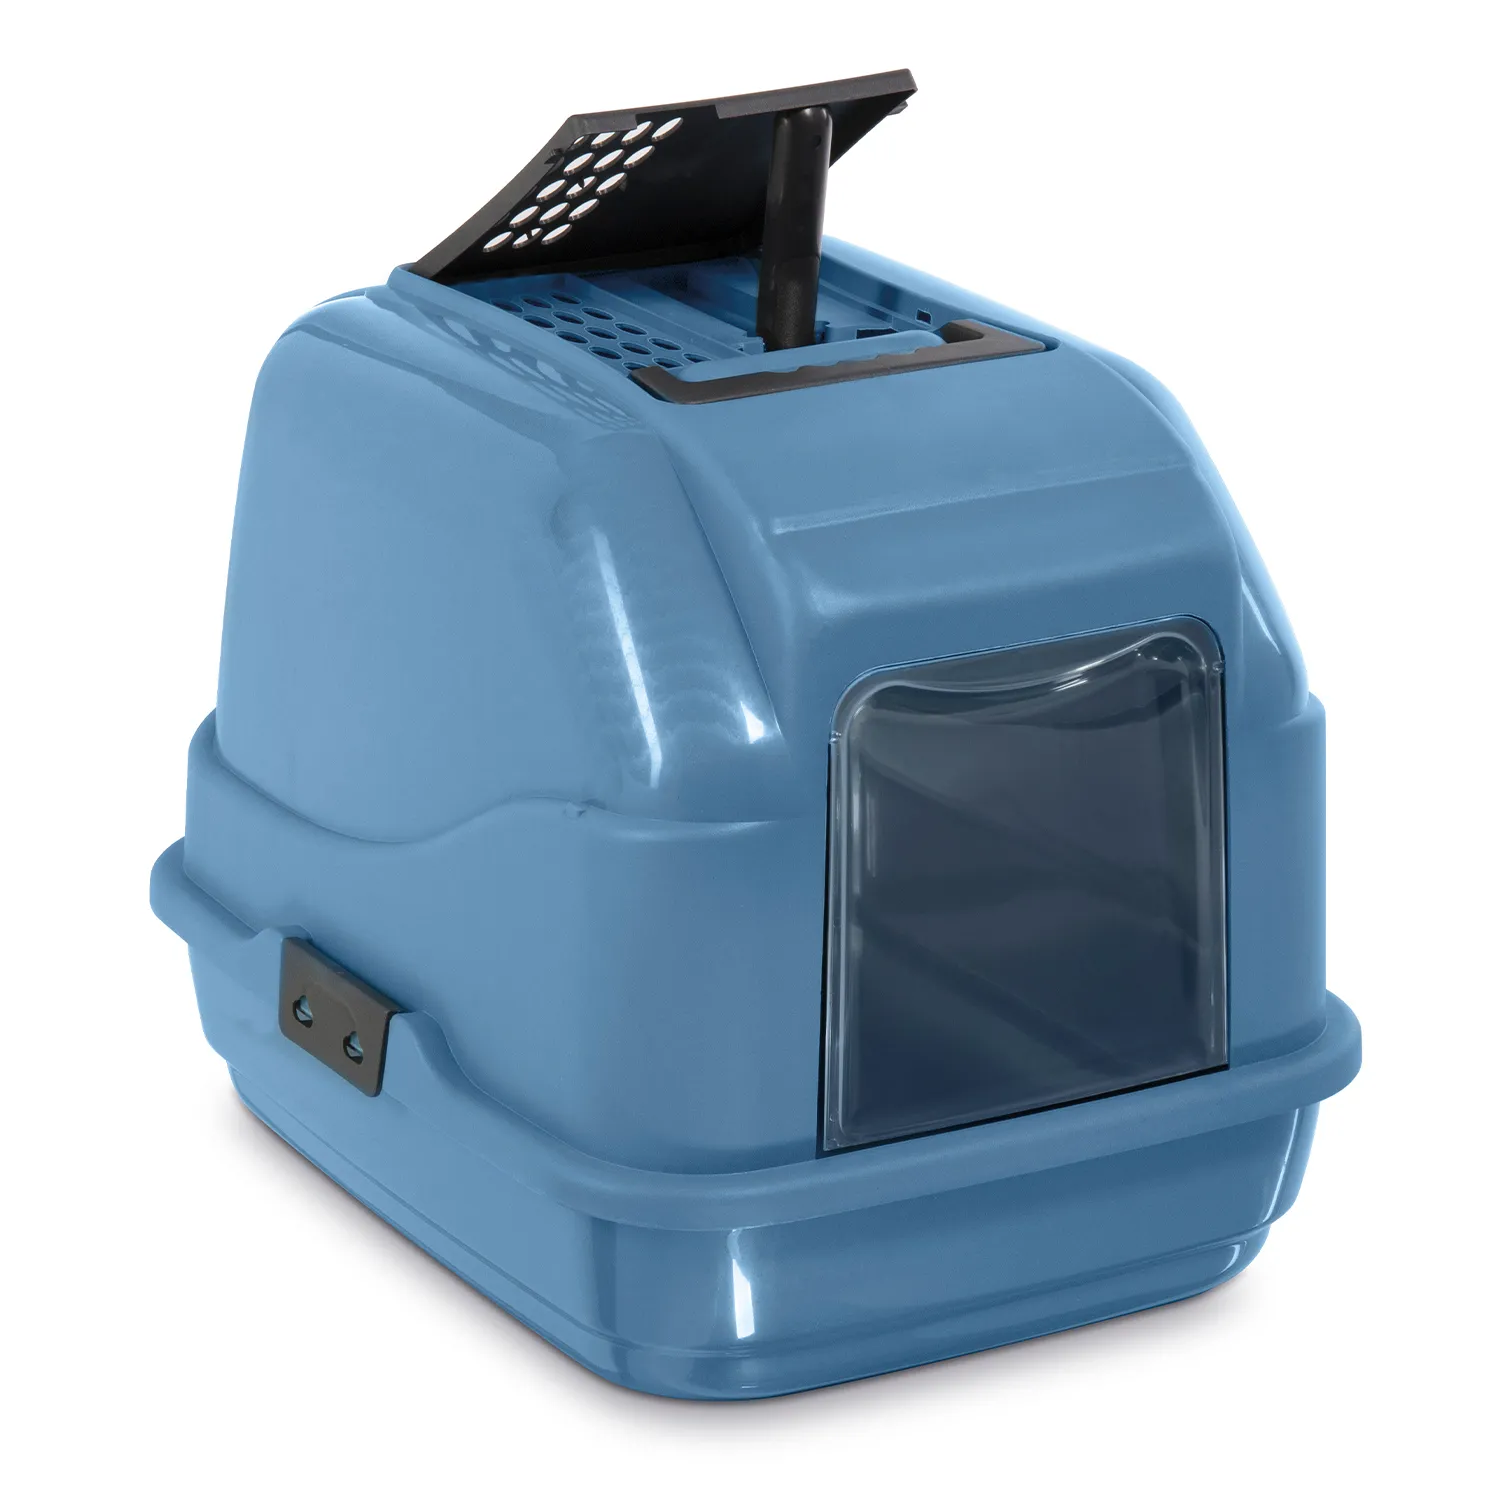 IMAC био-туалет для кошек EASY CAT 2ND LIFE 50х40х40h см, синий